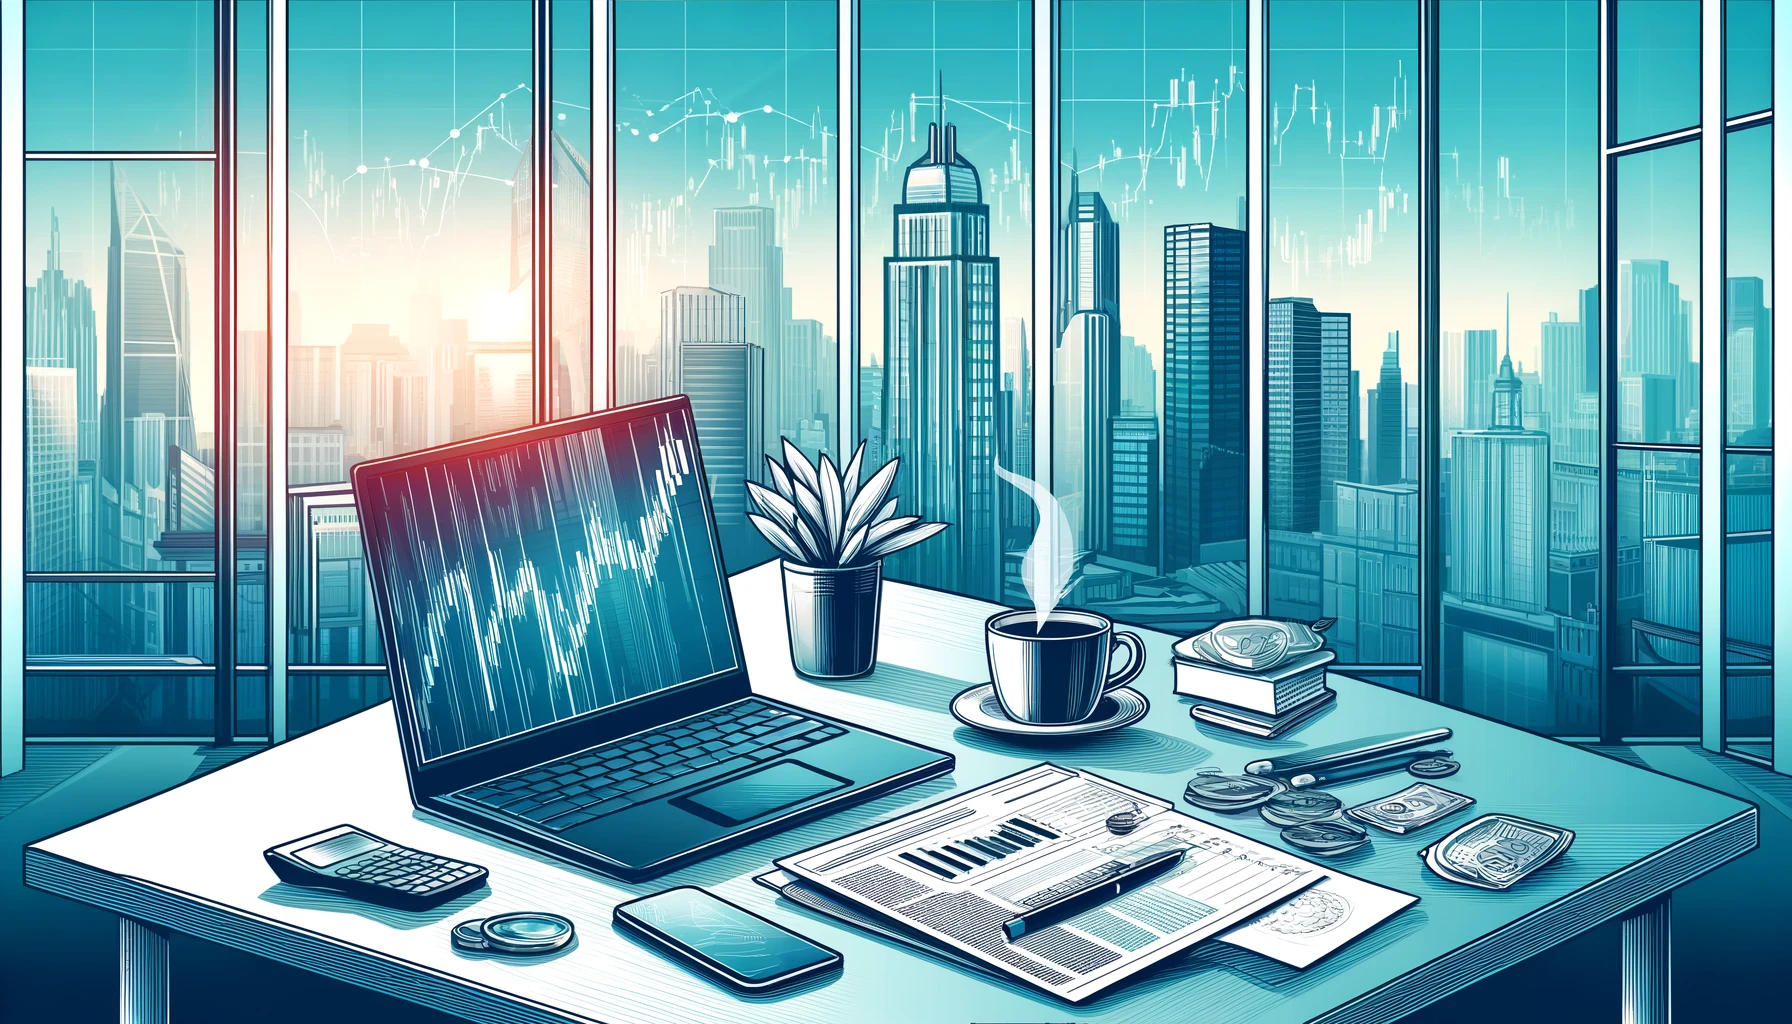 サラリーマン投資家のブログ用アイキャッチ画像。モダンなオフィスのデスクにはノートパソコン、コーヒーカップ、金融新聞、株式市場のチャートがあり、背景には大きな窓から見える都会の風景が広がっている。